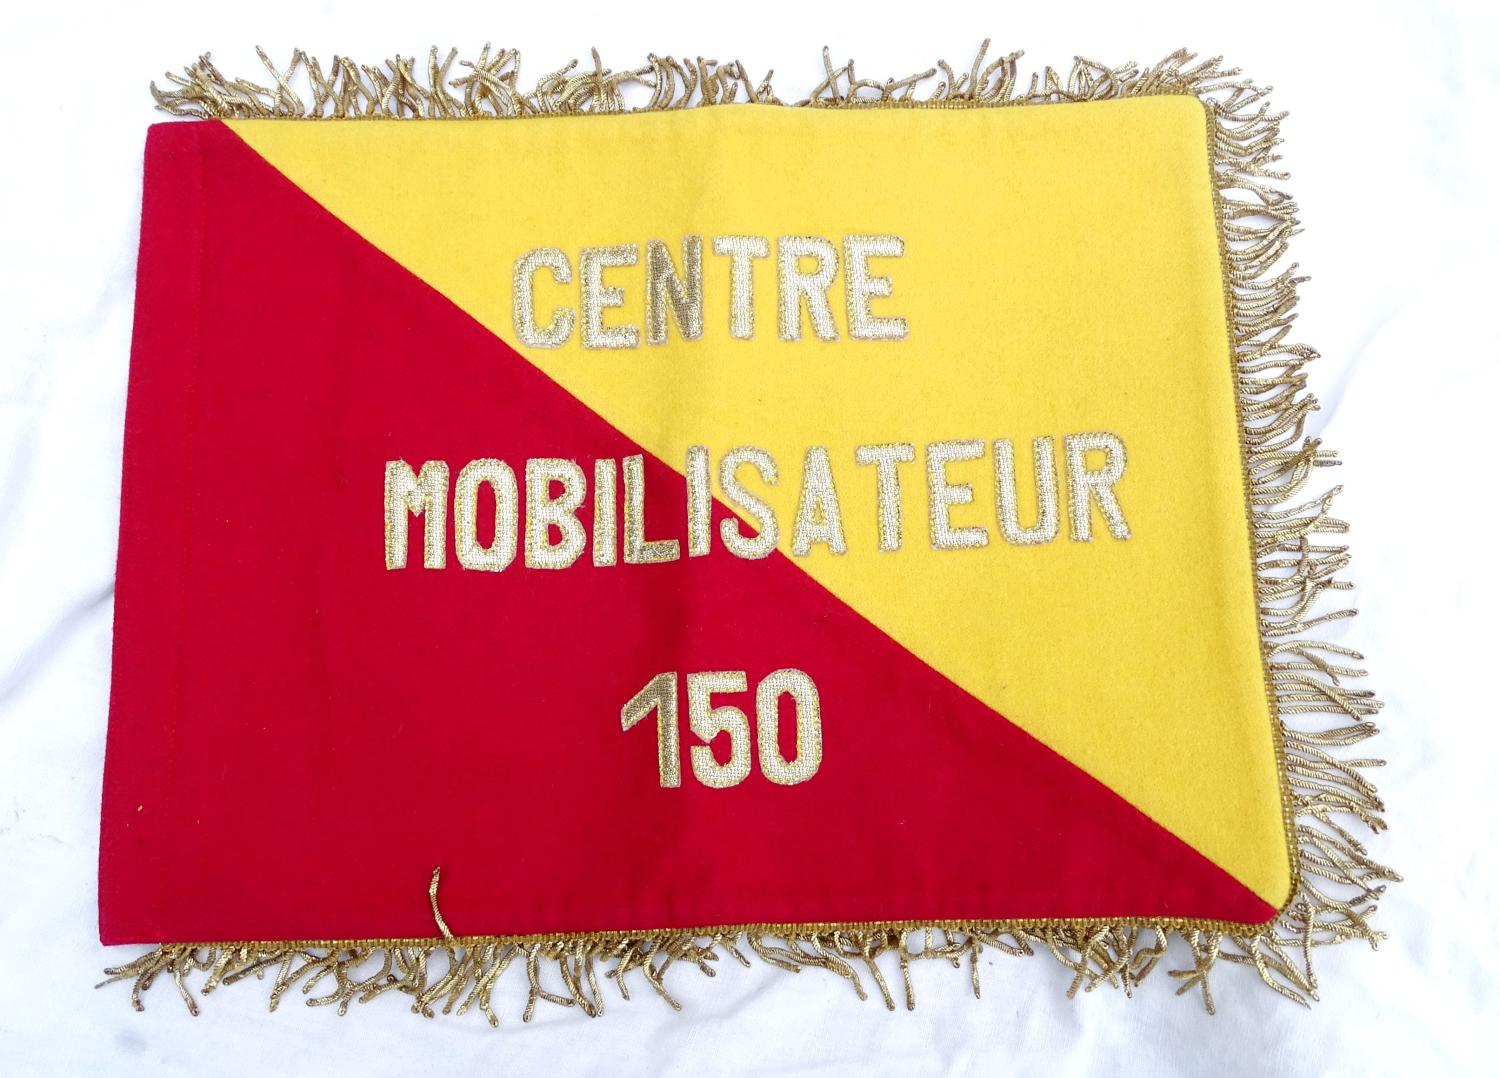 Fanion du Centre Mobilisateur 150. (Verdun).